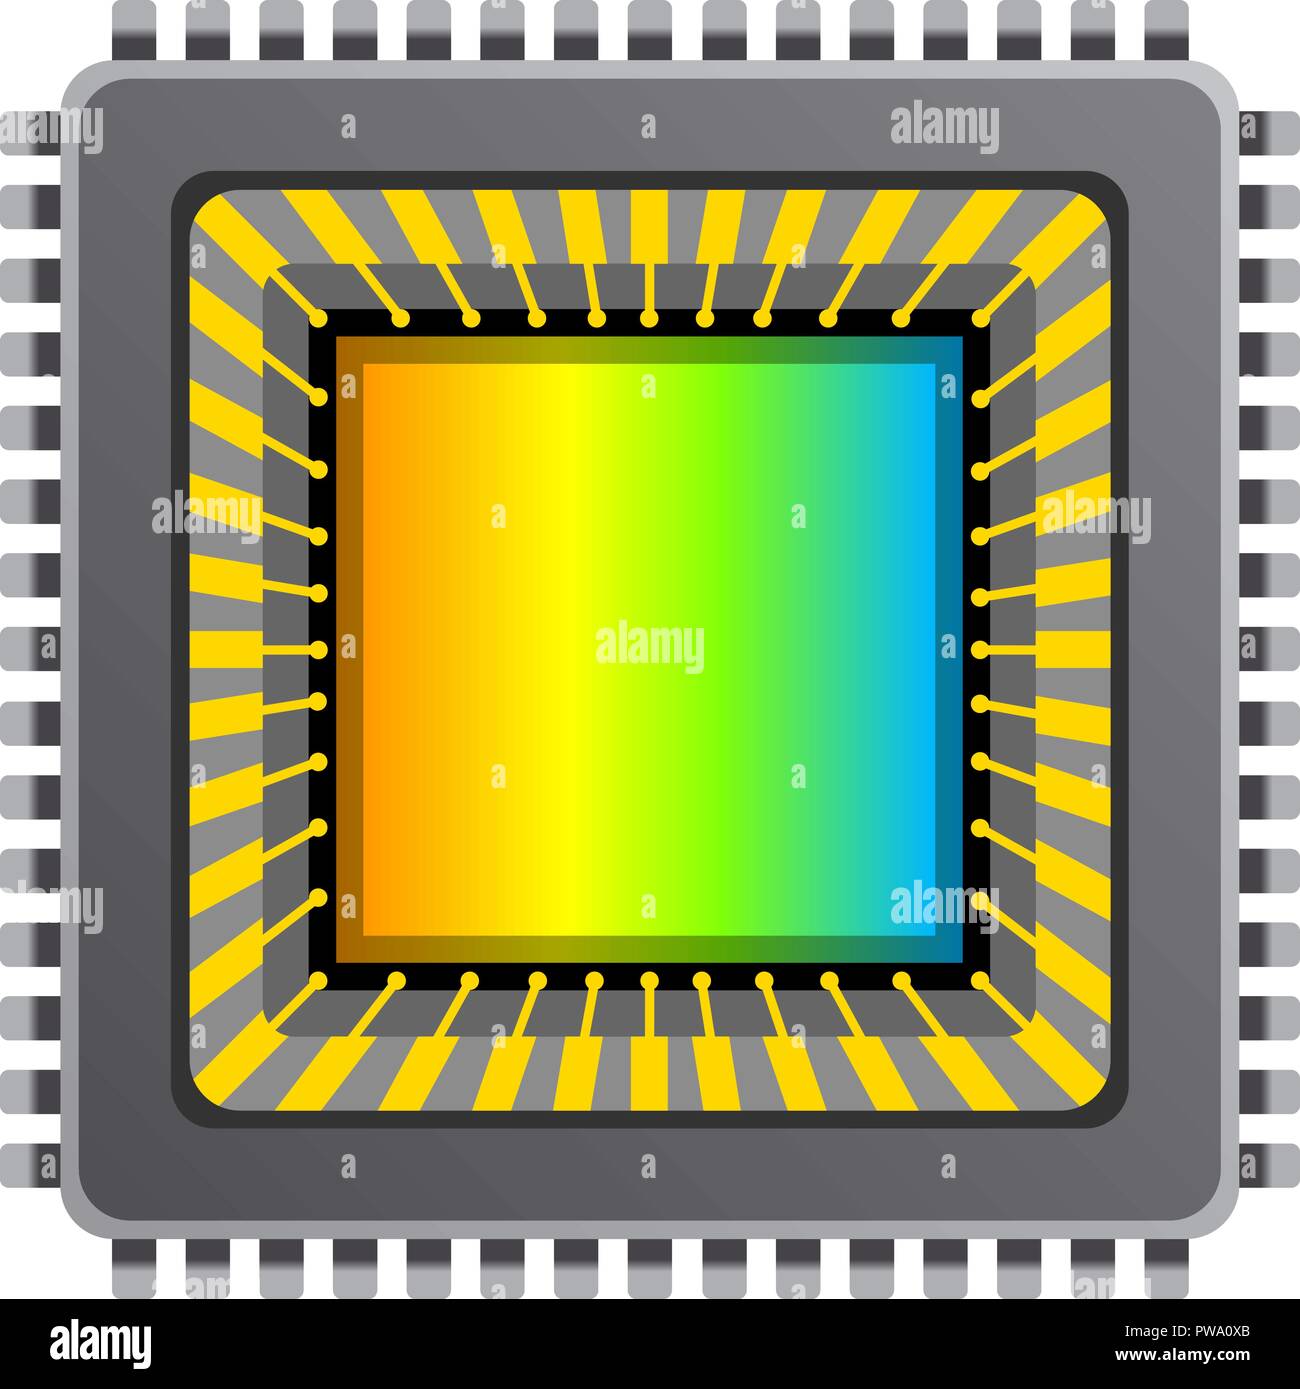 Vettore ccd CMOS sensore di immagine. Illustrazione Vettoriale